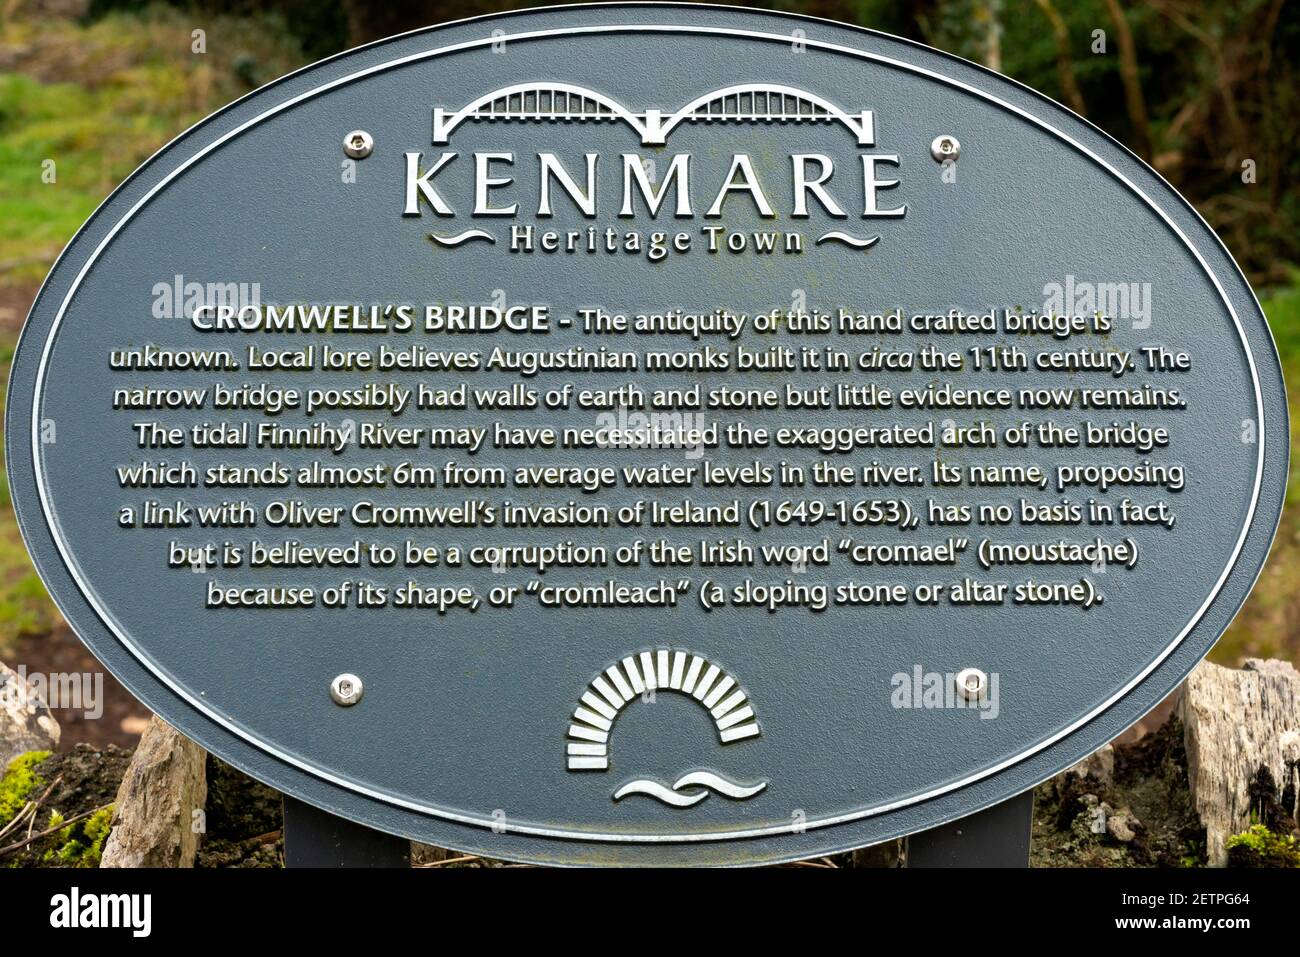 Kenmare Heritage Town et Cromwell's Bridge information plaque signe à Kenmare, comté de Kerry, Irlande Banque D'Images